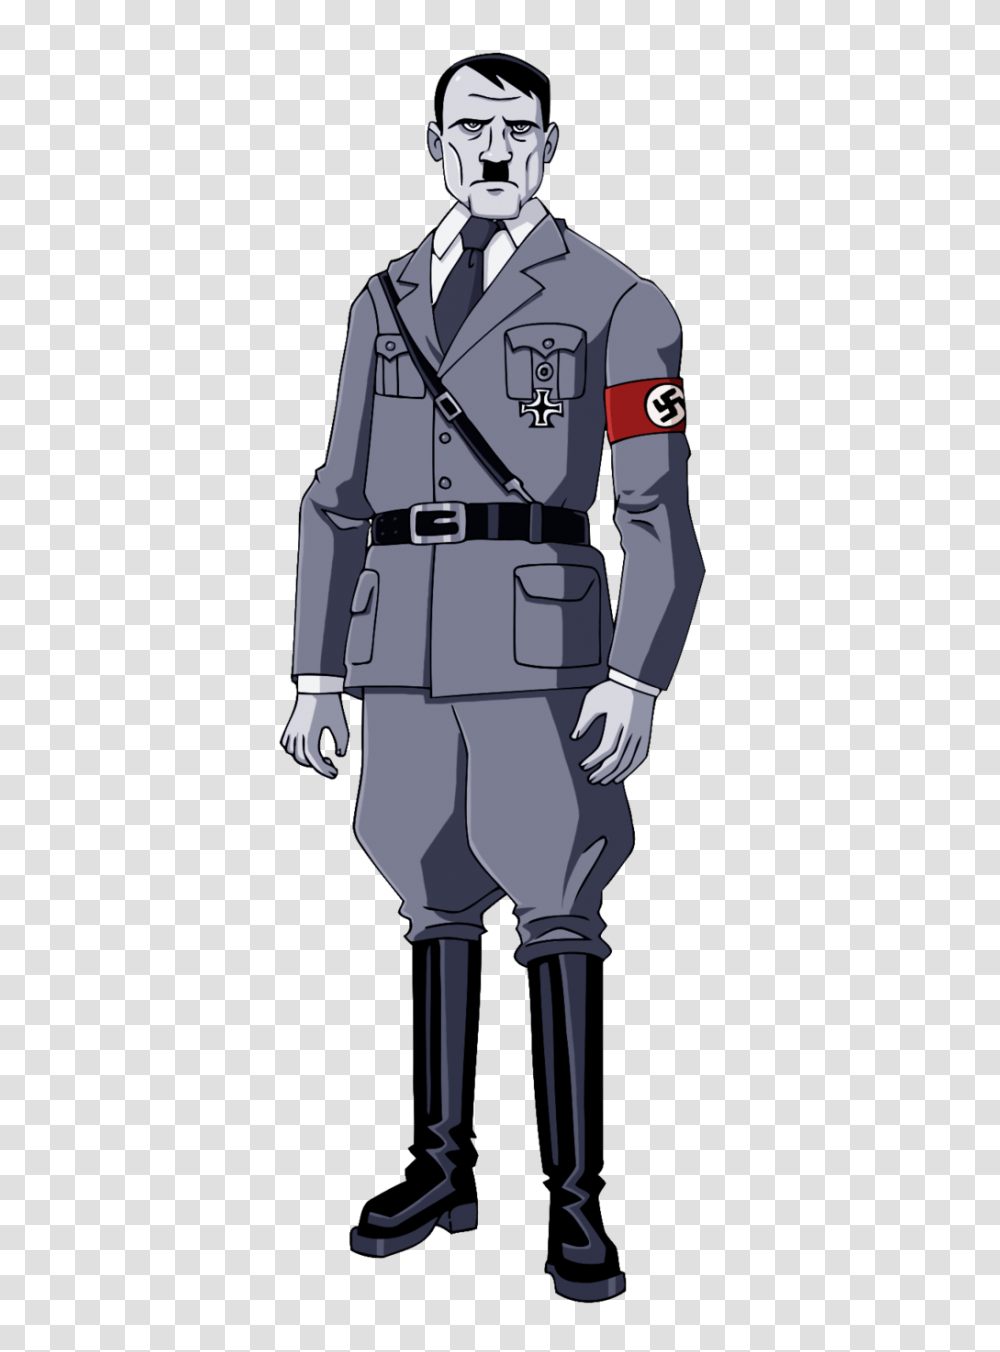 Hitler, Celebrity, Military Uniform, Officer, Person Transparent Png